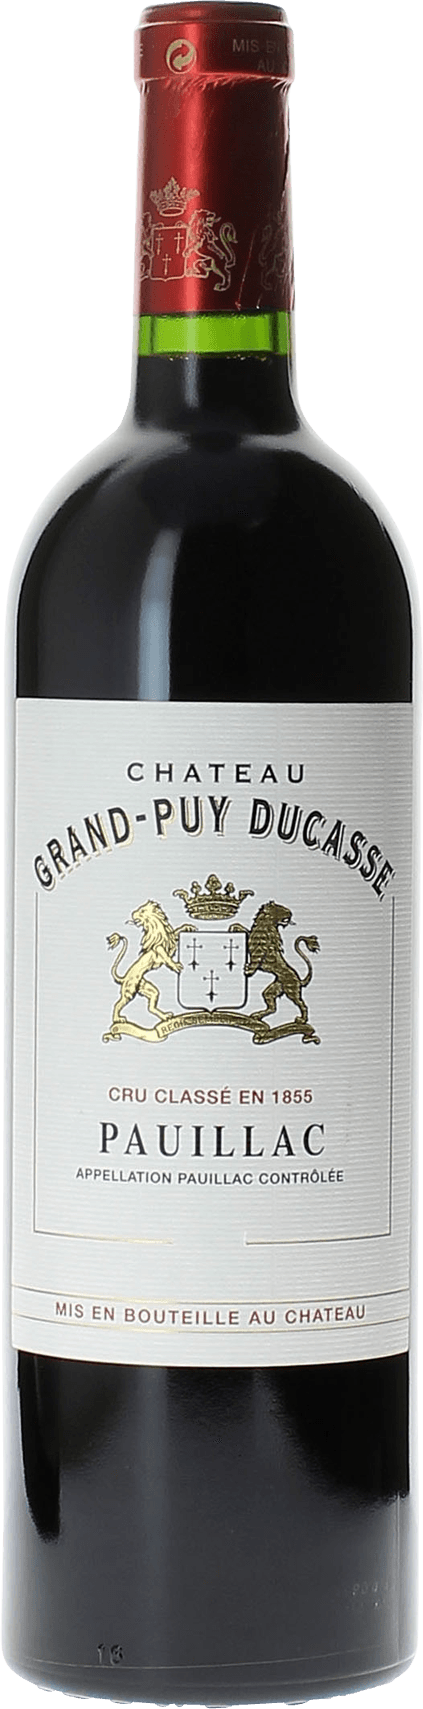 Grand puy ducasse 2021 5 me Grand cru class Pauillac, Bordeaux rouge